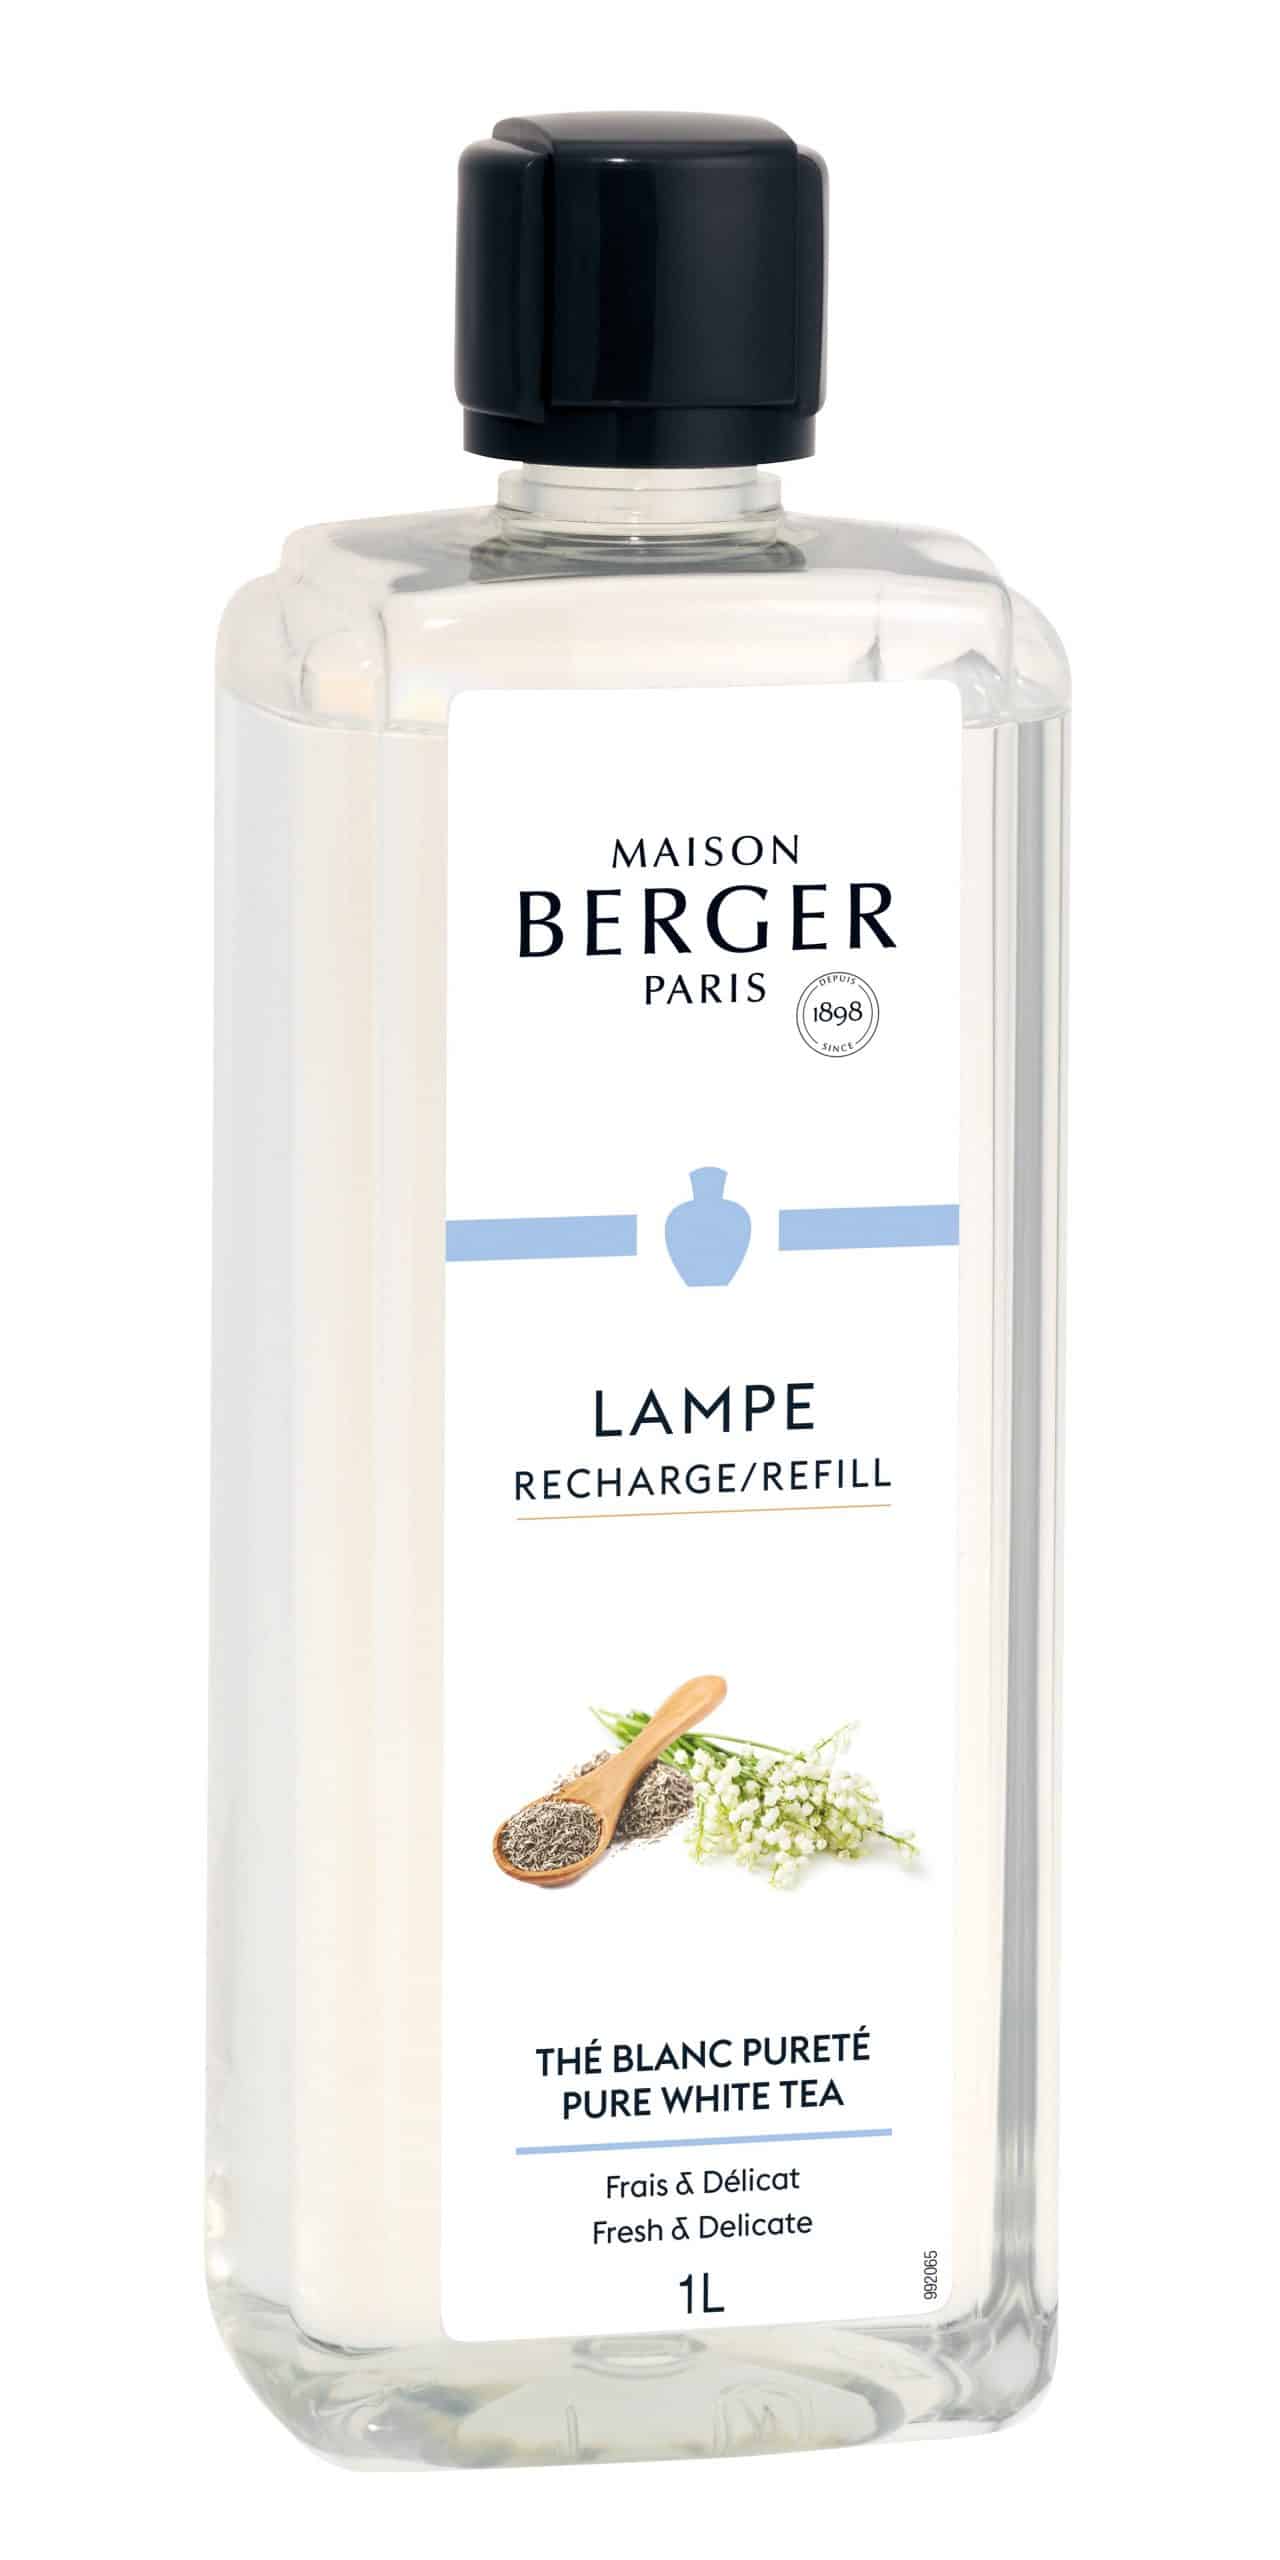 Maison Berger Paris - parfum Pure White Tea - 1 liter